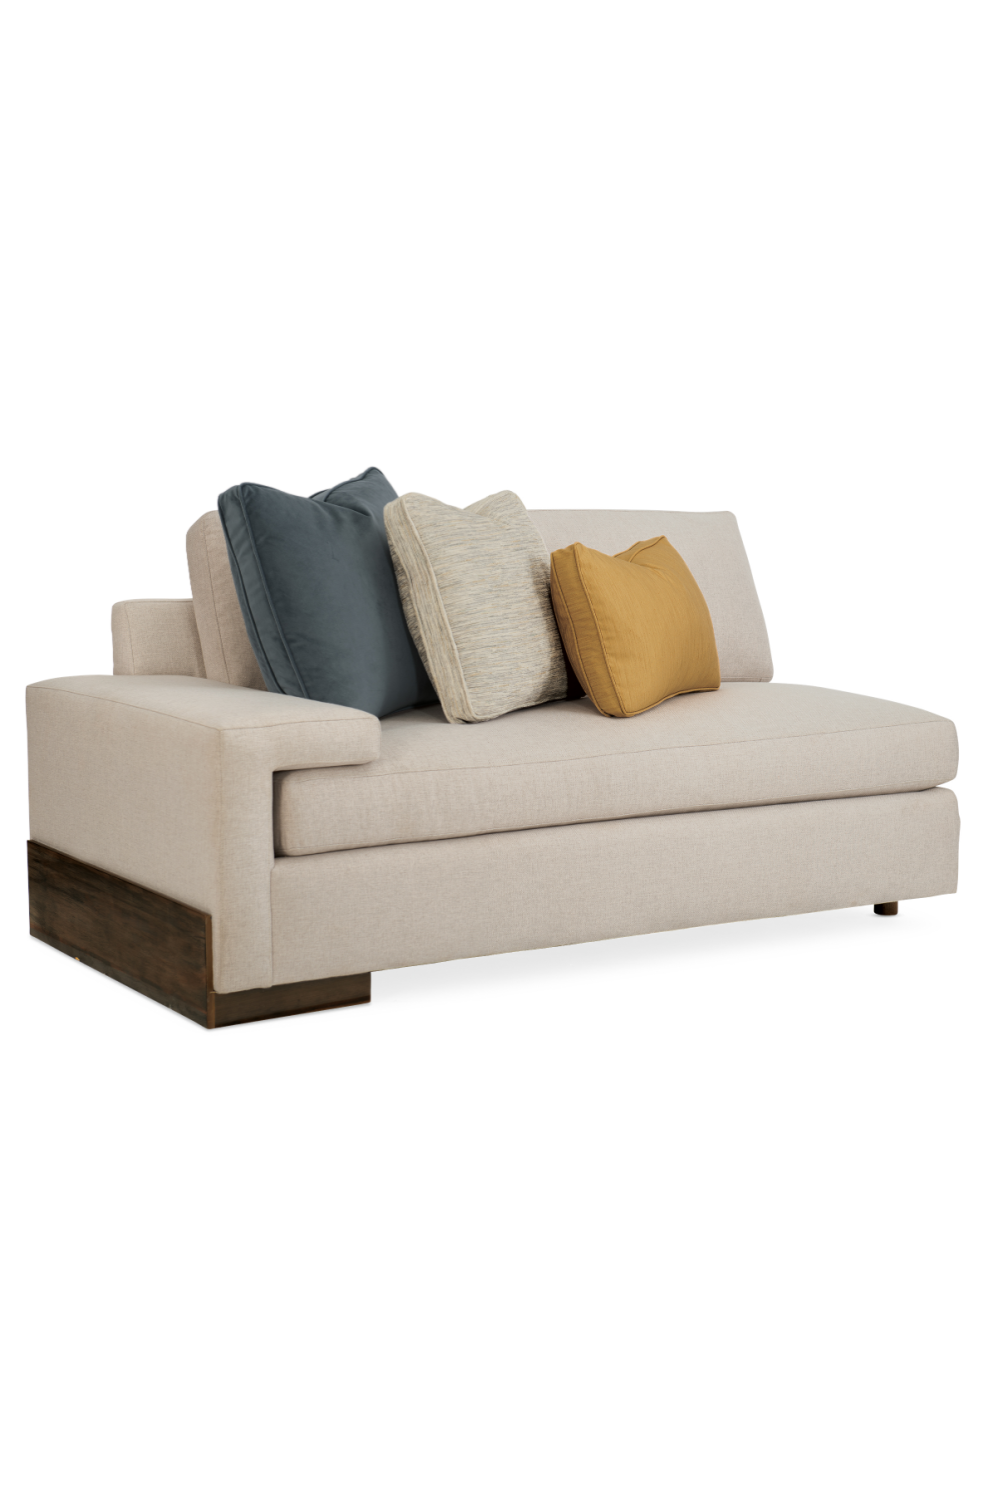 Neutral-Toned Sectional Sofa | Caracole I'm Shelf-Ish | oroa.com